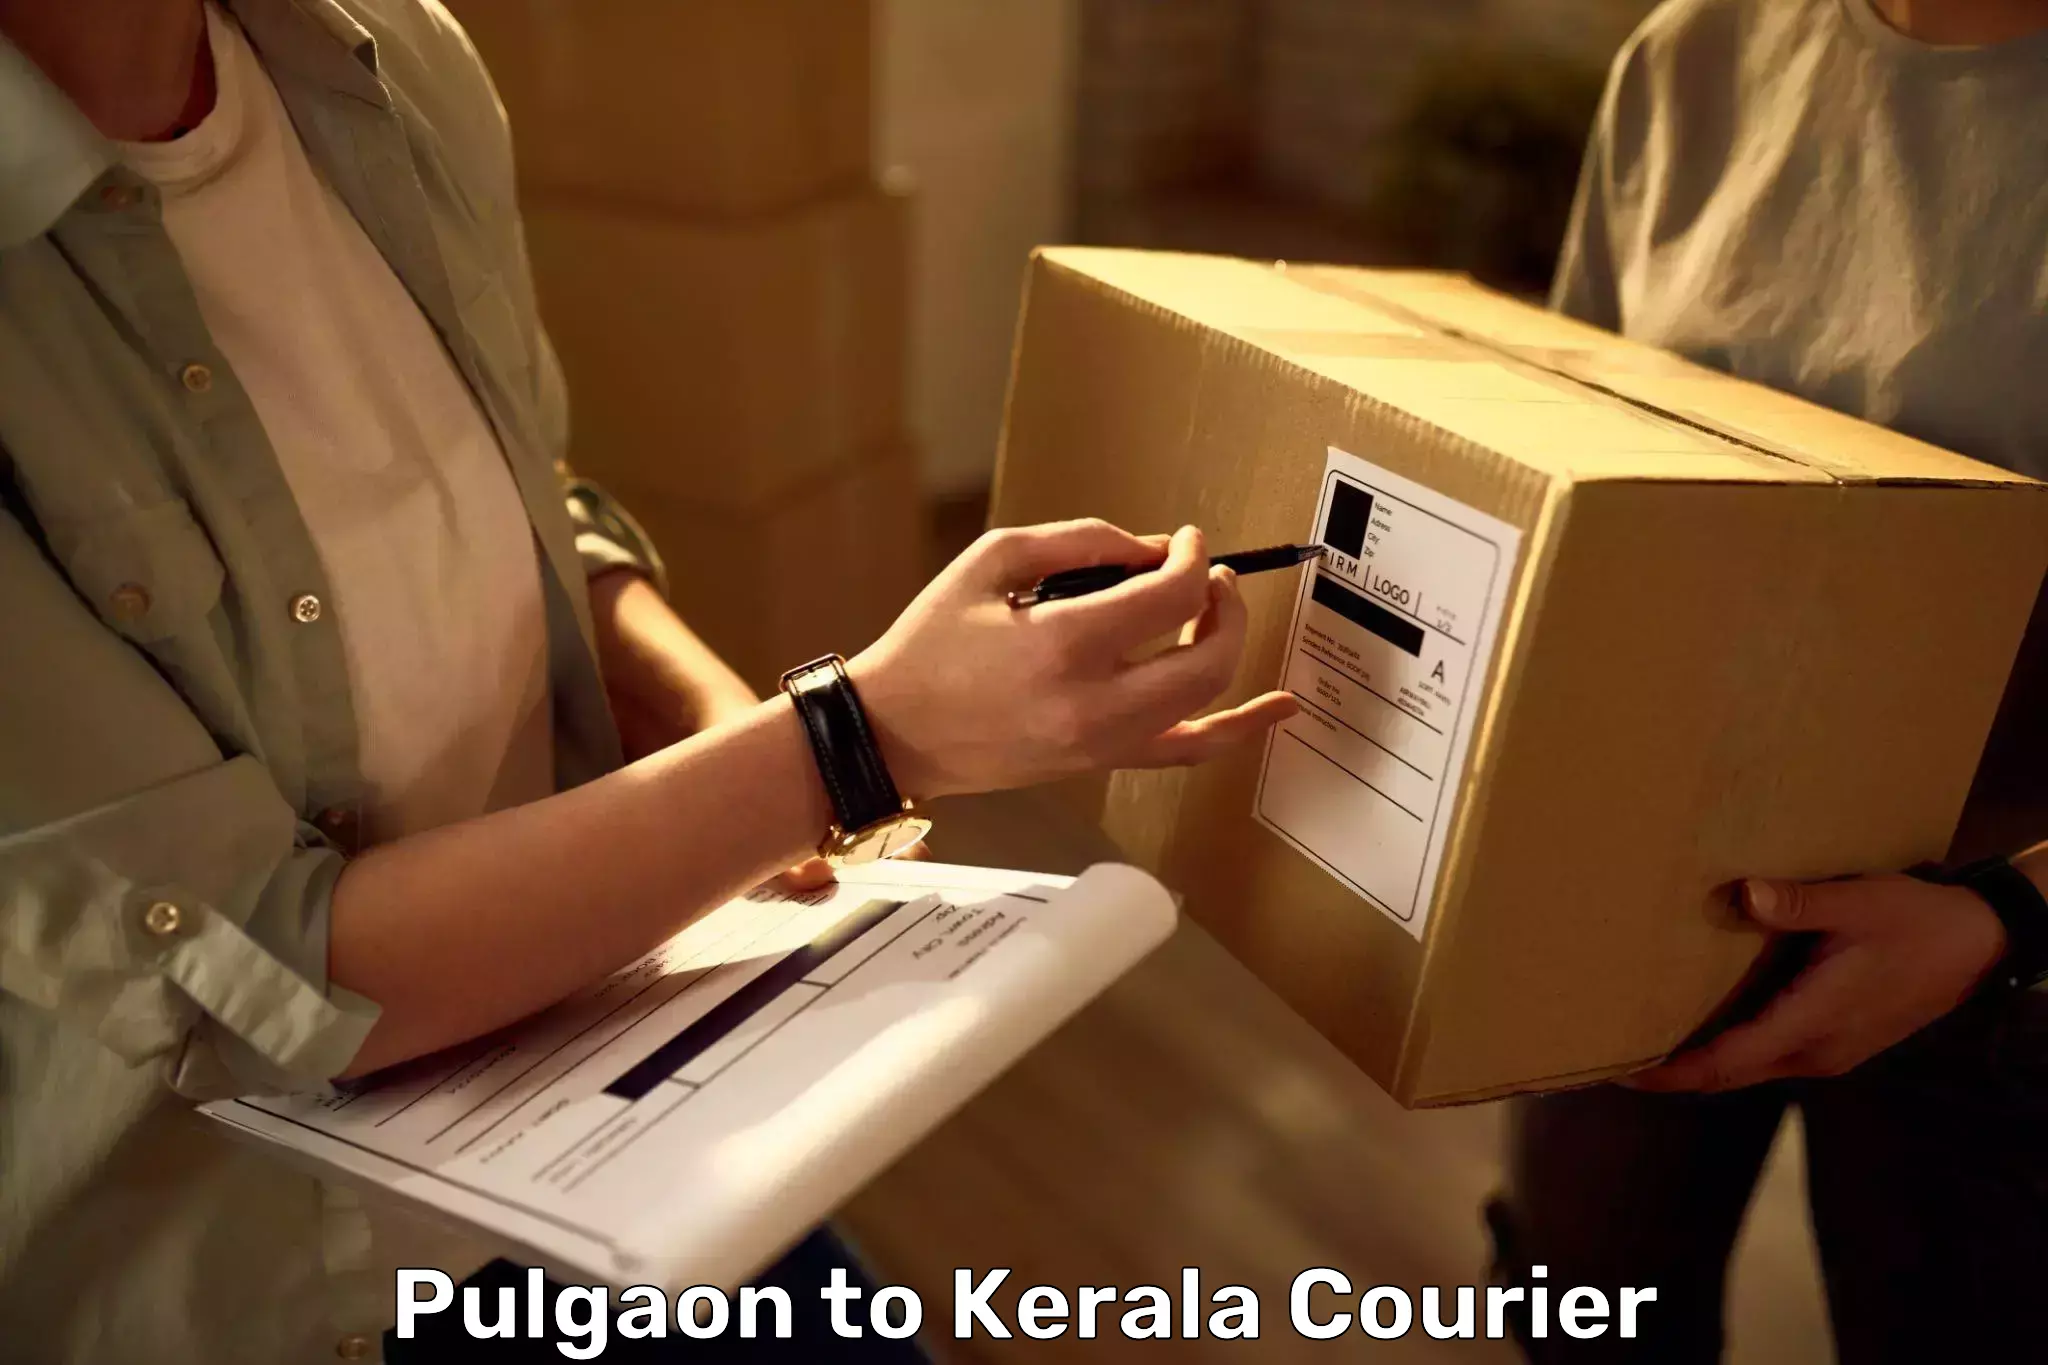 Electronic items luggage shipping Pulgaon to Kakkur